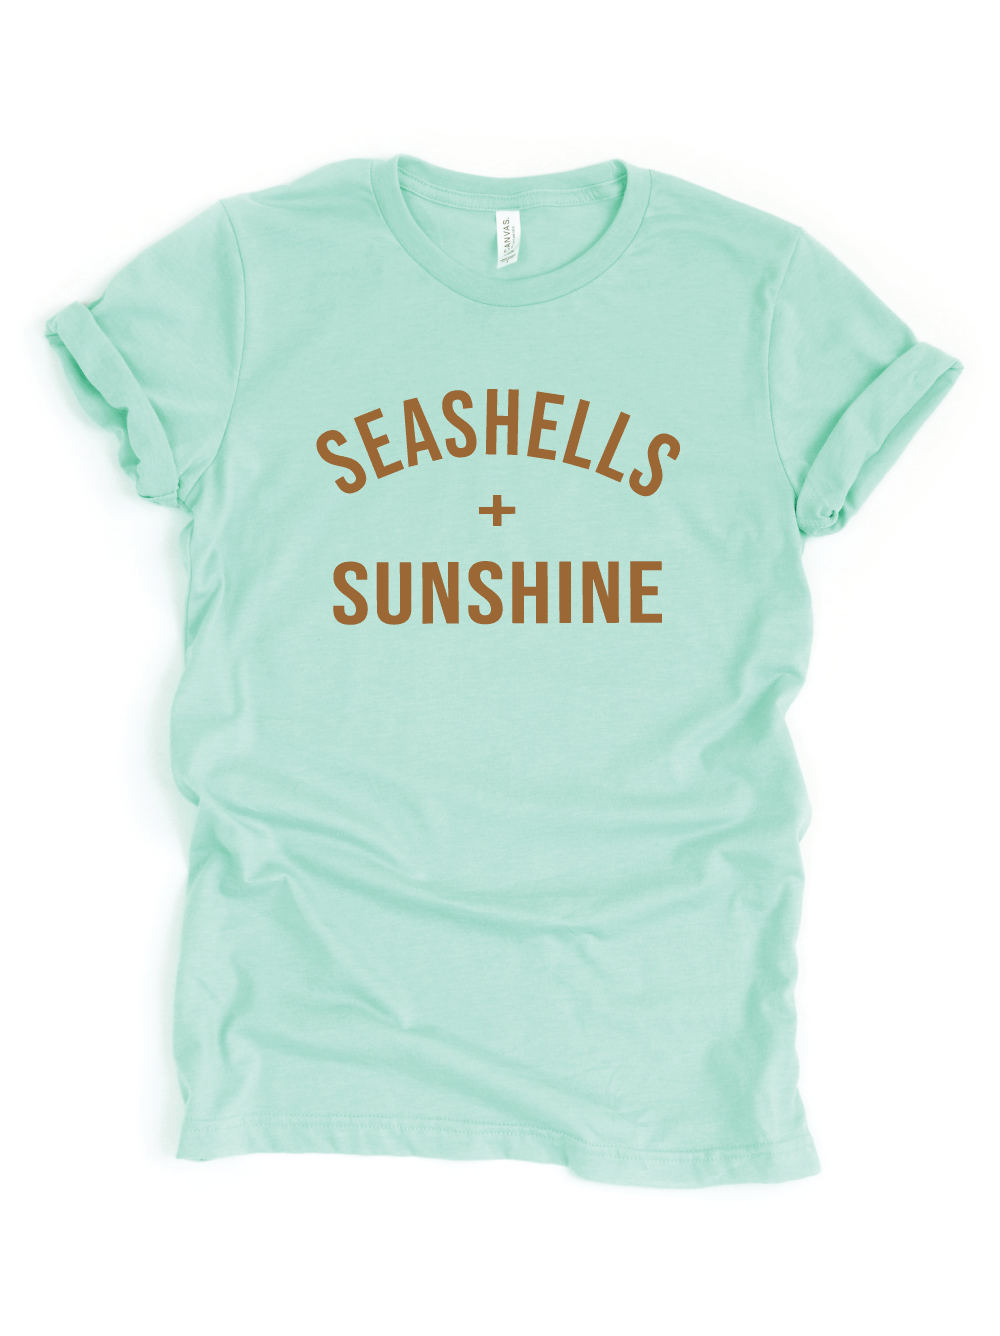 Seashells + Sunshine || Adult Tee